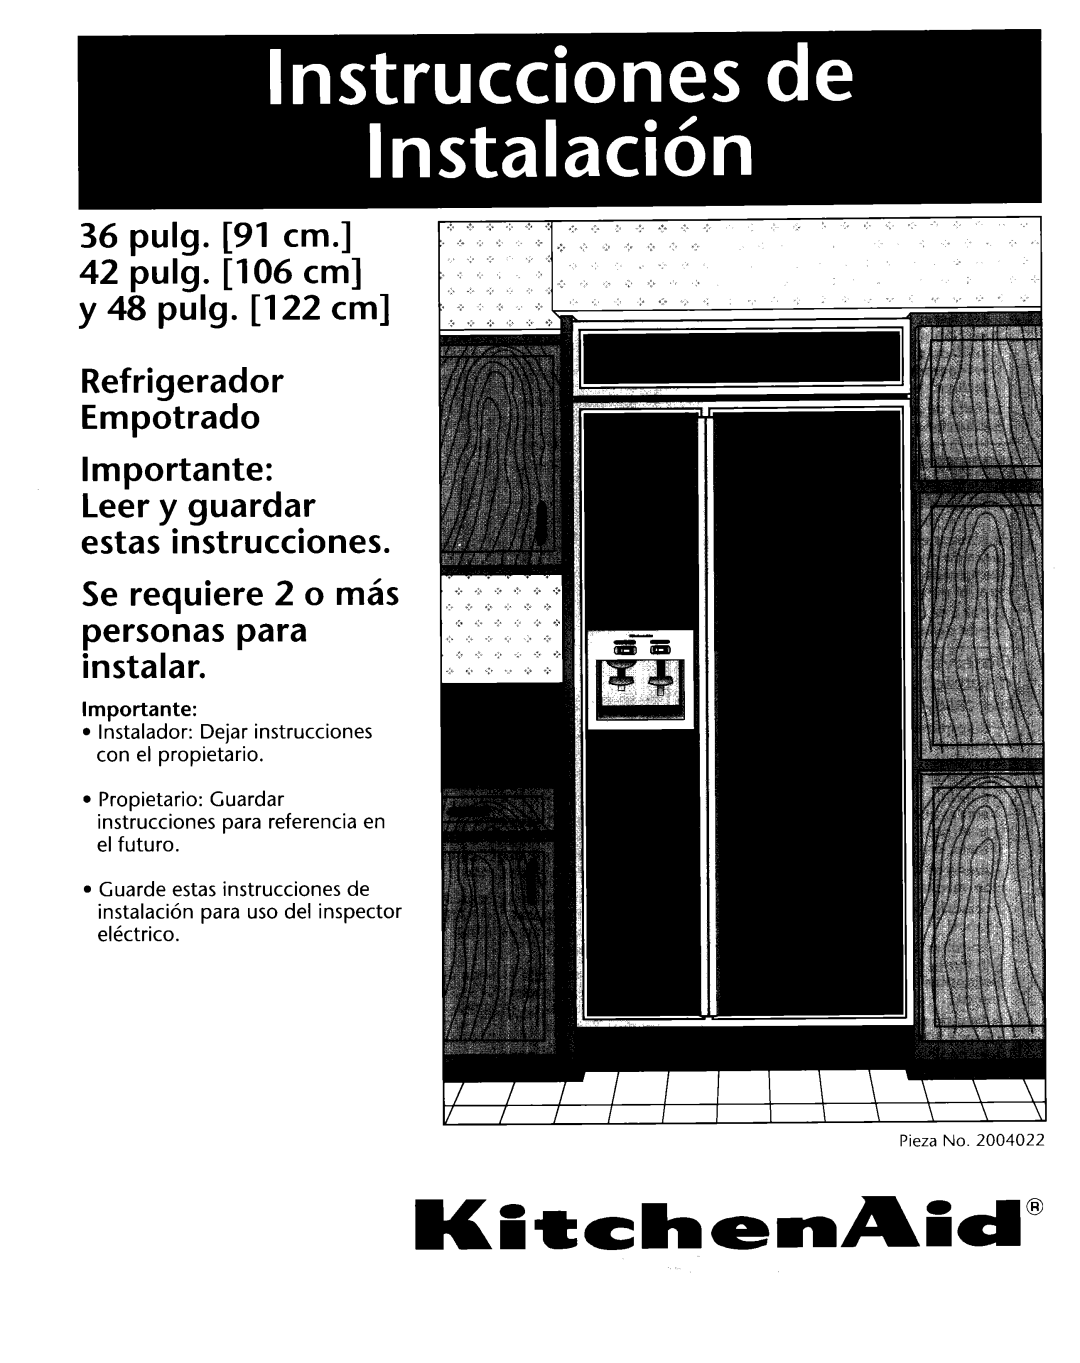 KitchenAid 2004022 pulg. 91 cm 42 pulg. 106 cm y 48 pulg. 122 cm Refrigerador, Se requiere 2 0 miis personas para instalar 